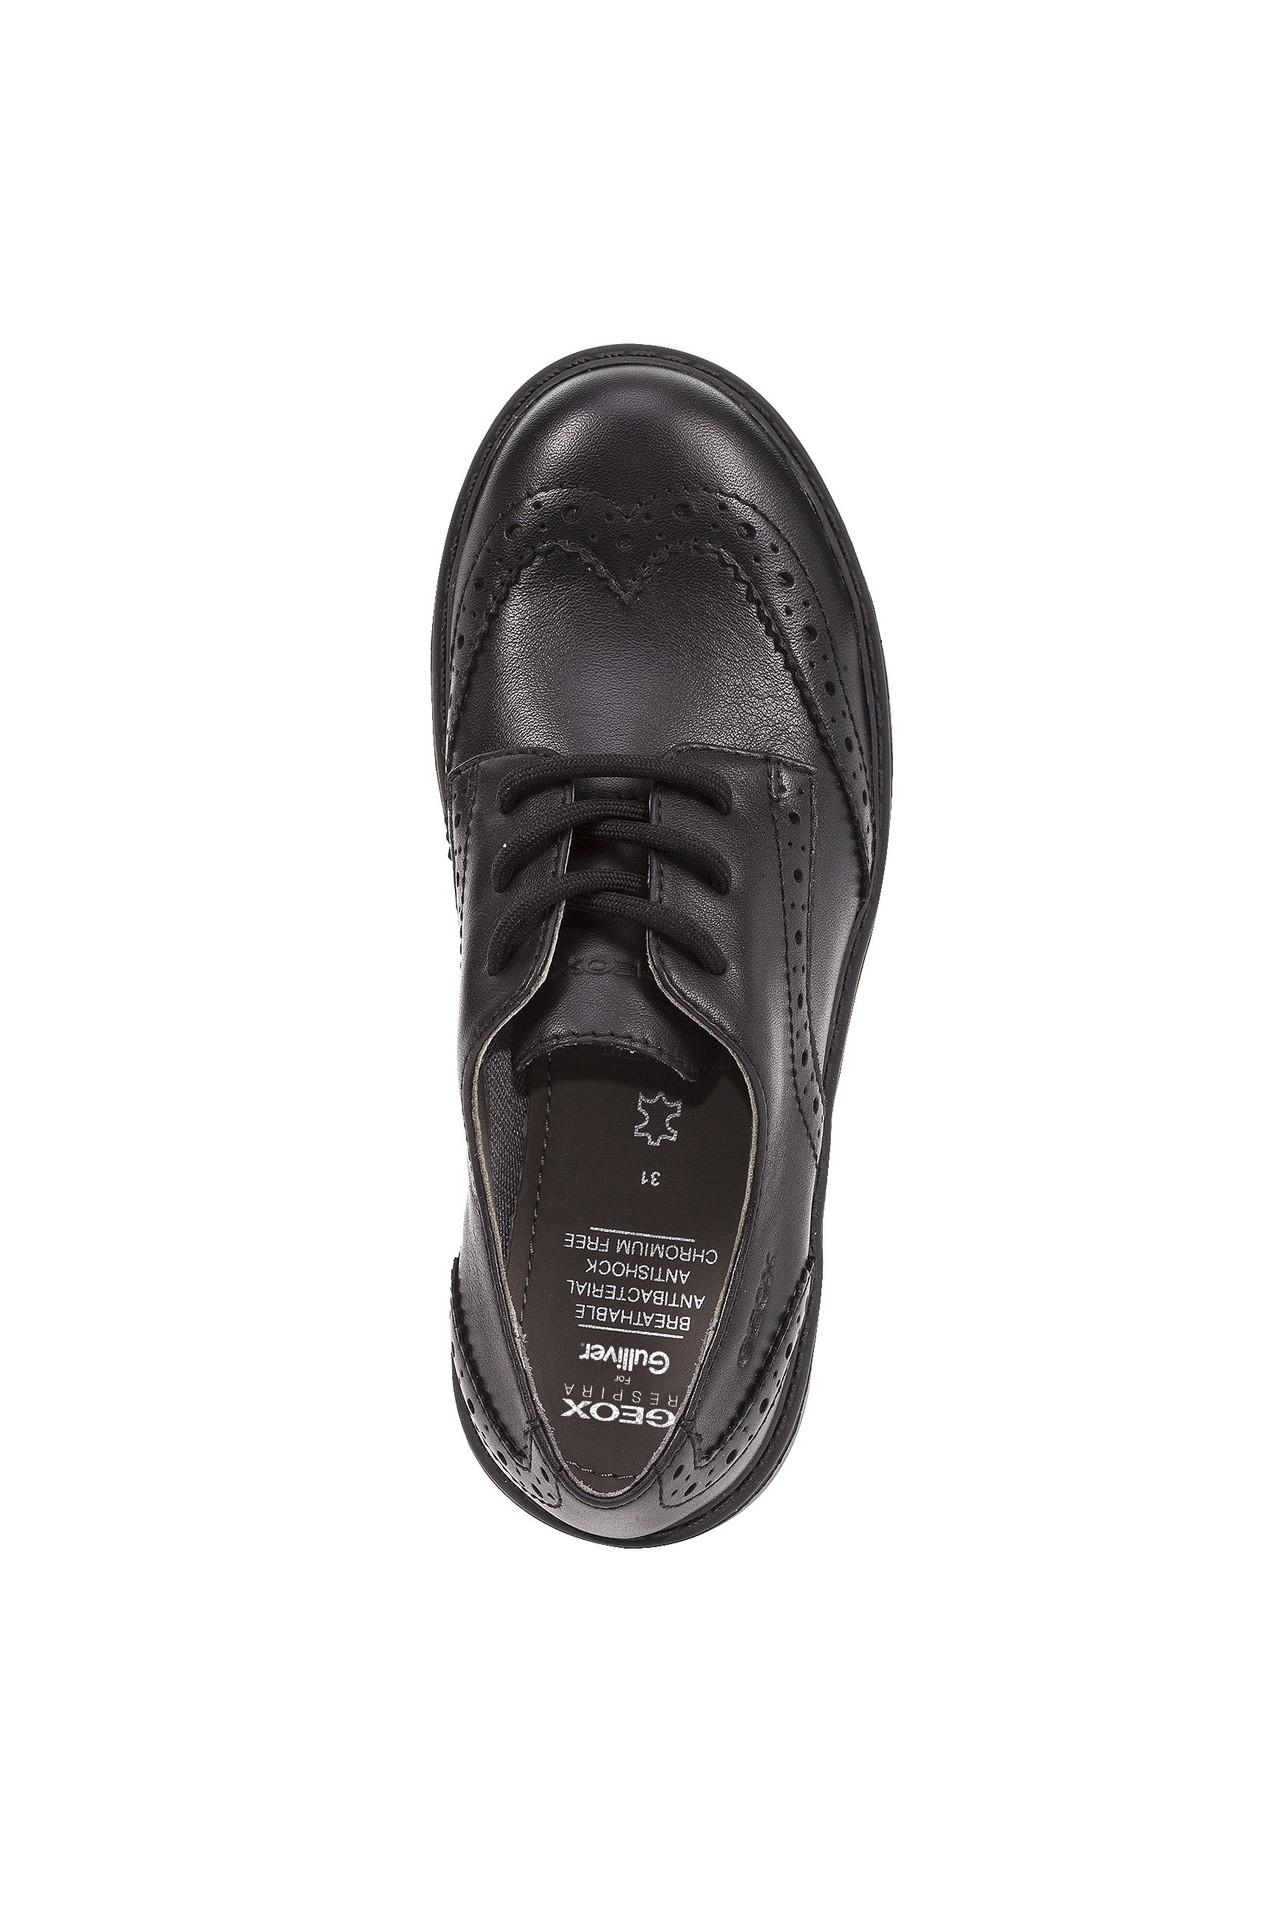 Туфли дерби Geox J6420NL0085C9999, размер 31, цвет черный - фото 5